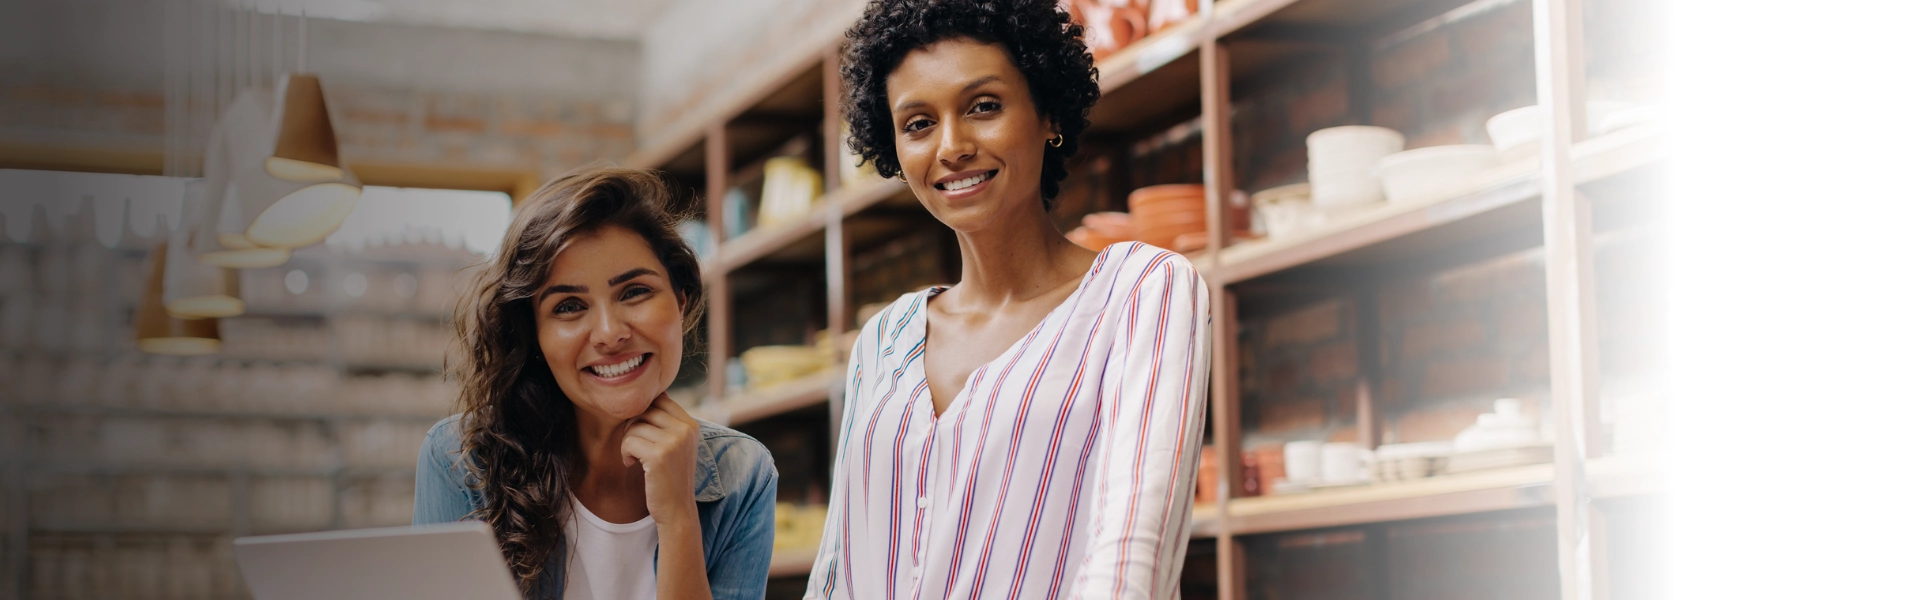 Duas mulheres apoiadas em um balcão de loja sorrindo de forma otimista.